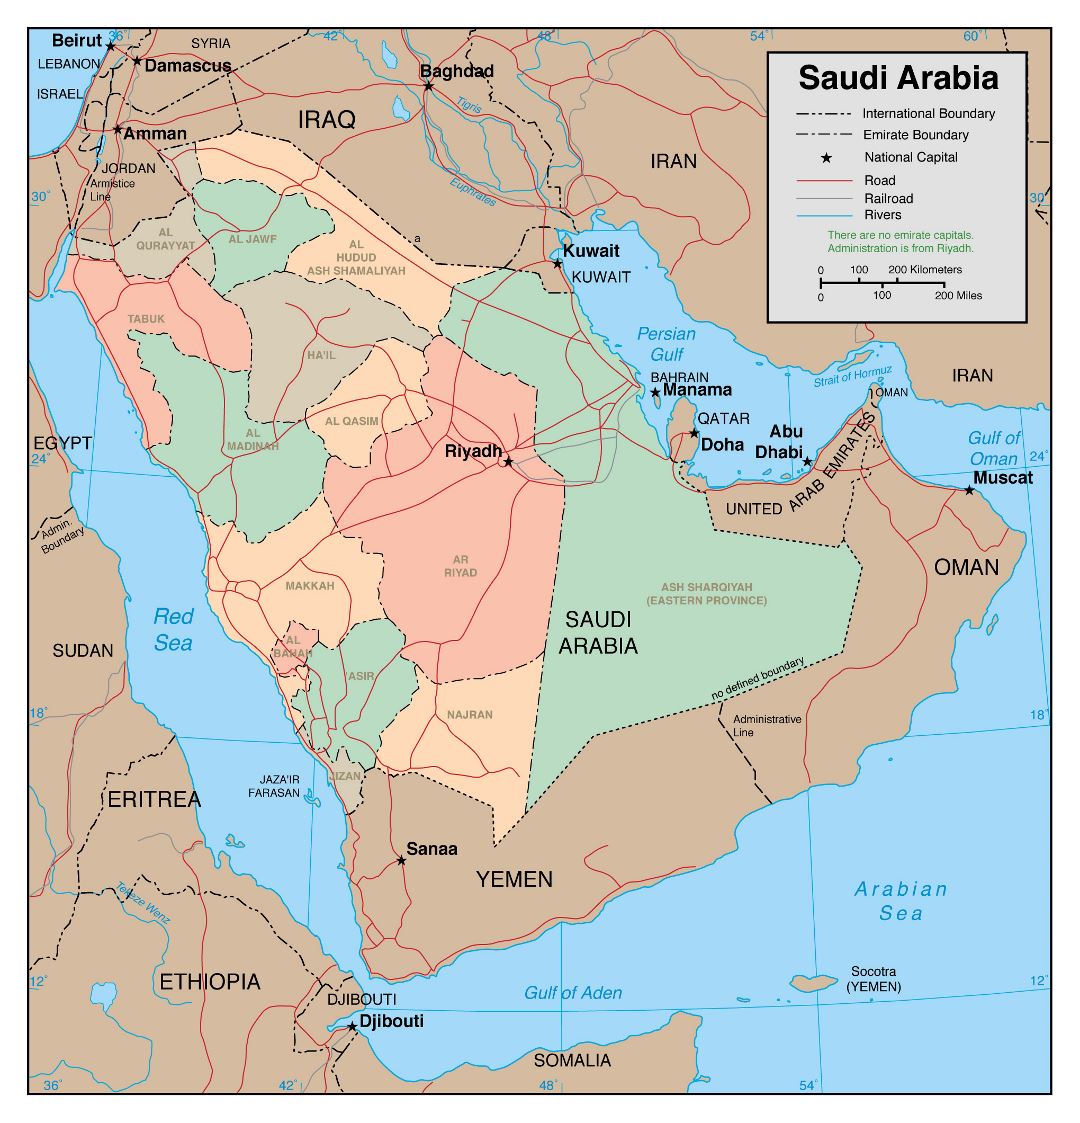 Grande detallado mapa político y administrativo de Arabia Saudita con carreteras, ferrocarriles y principales ciudades